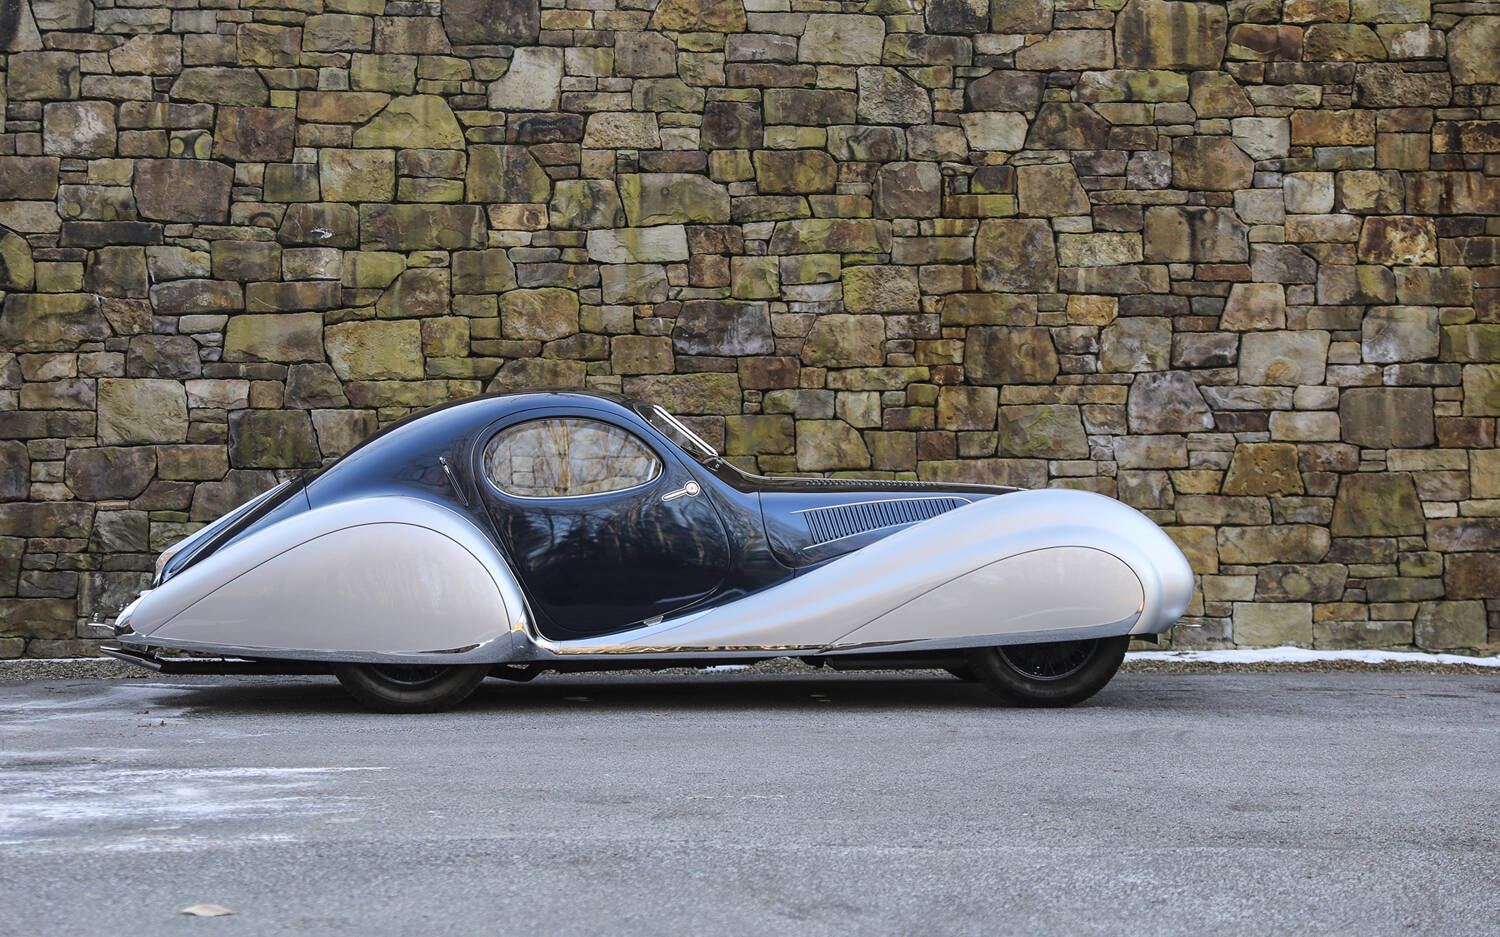 Une sublime Talbot-Lago de 1937 vendue pour 17 M$ à l’encan 514948-une-sublime-talbot-lago-de-1937-vendue-pour-17m-a-l-encan